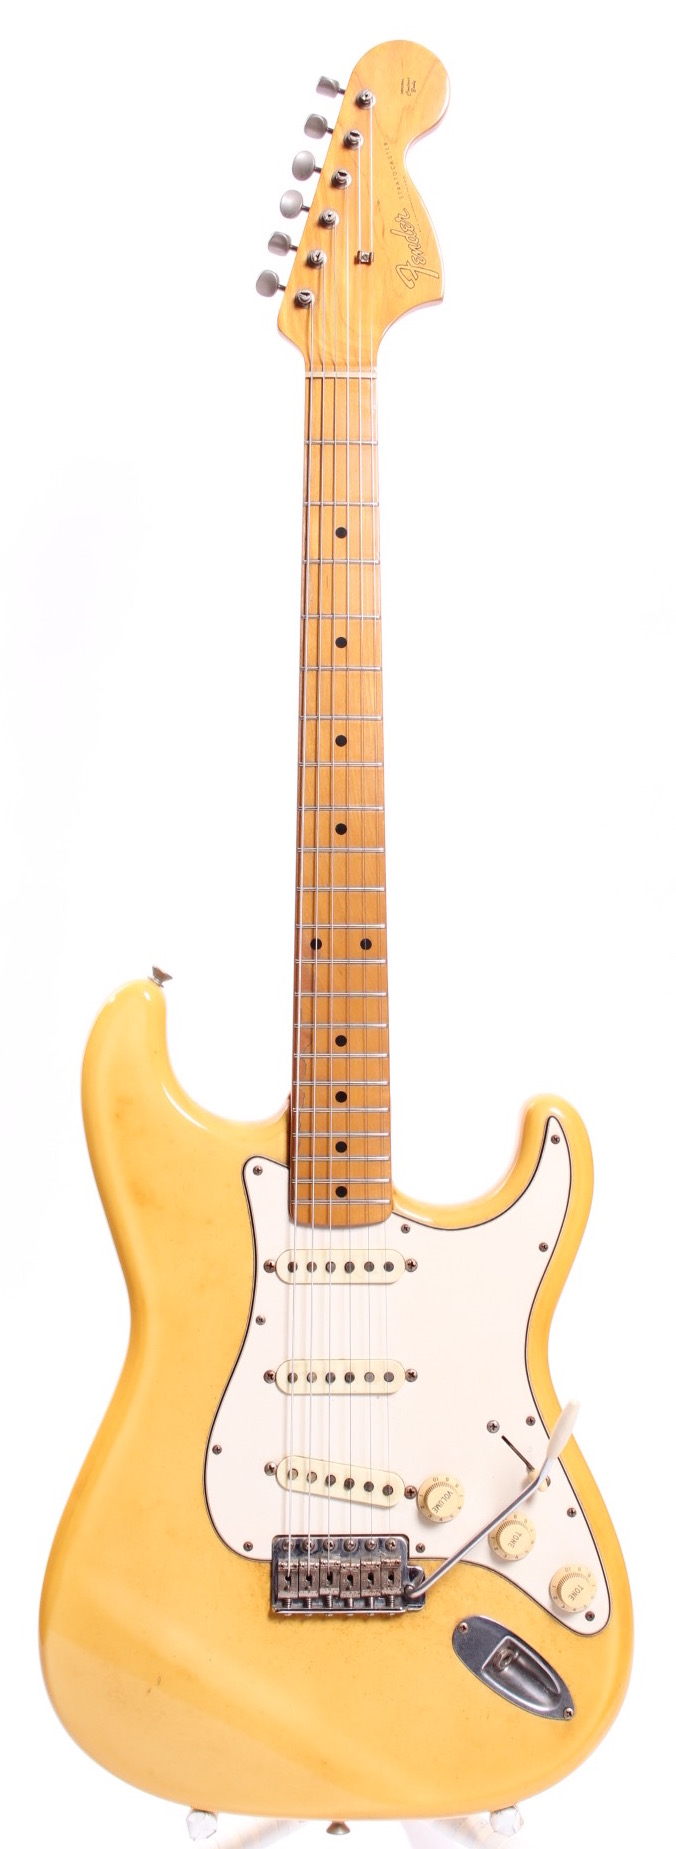 Vintage Fender Stratocaster For Sale 84